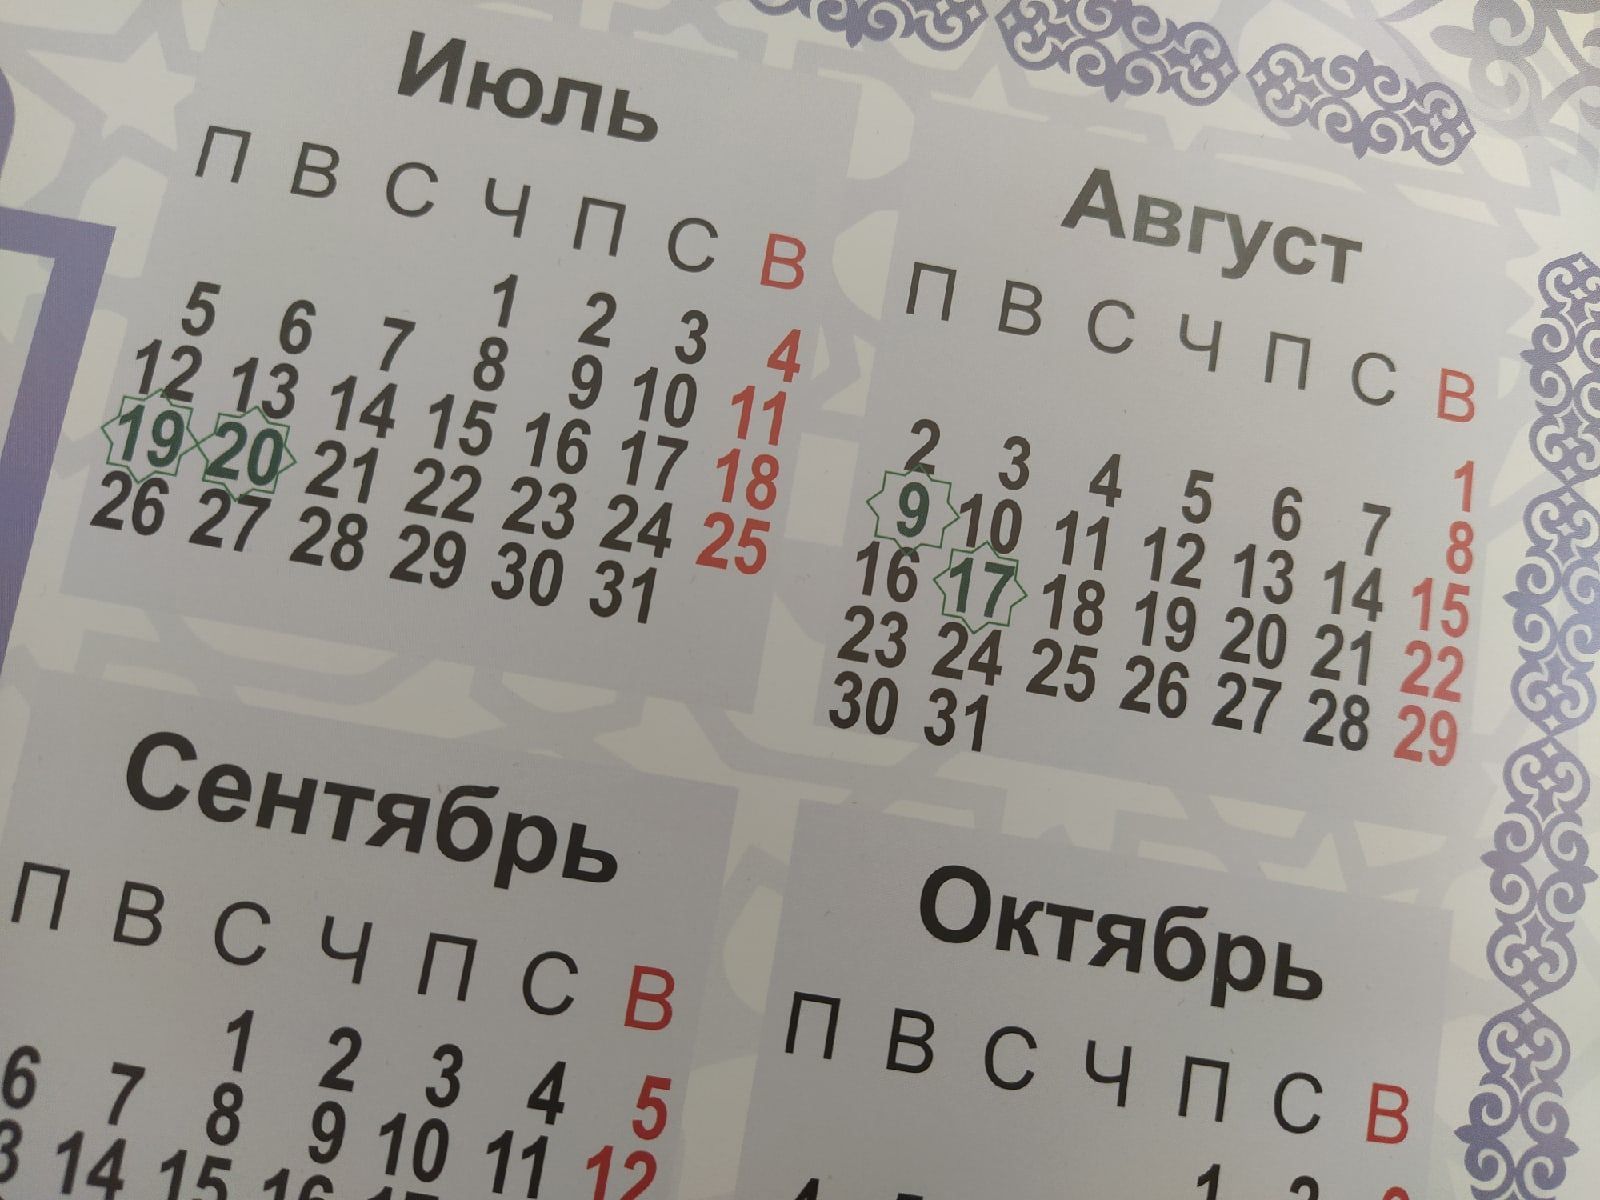 Завтра выходной в татарстане. Выходные в августе 2022 в Татарстане. Дни в августе 2022. Нерабочие дни в августе 2022. Выходные в августе 2022.